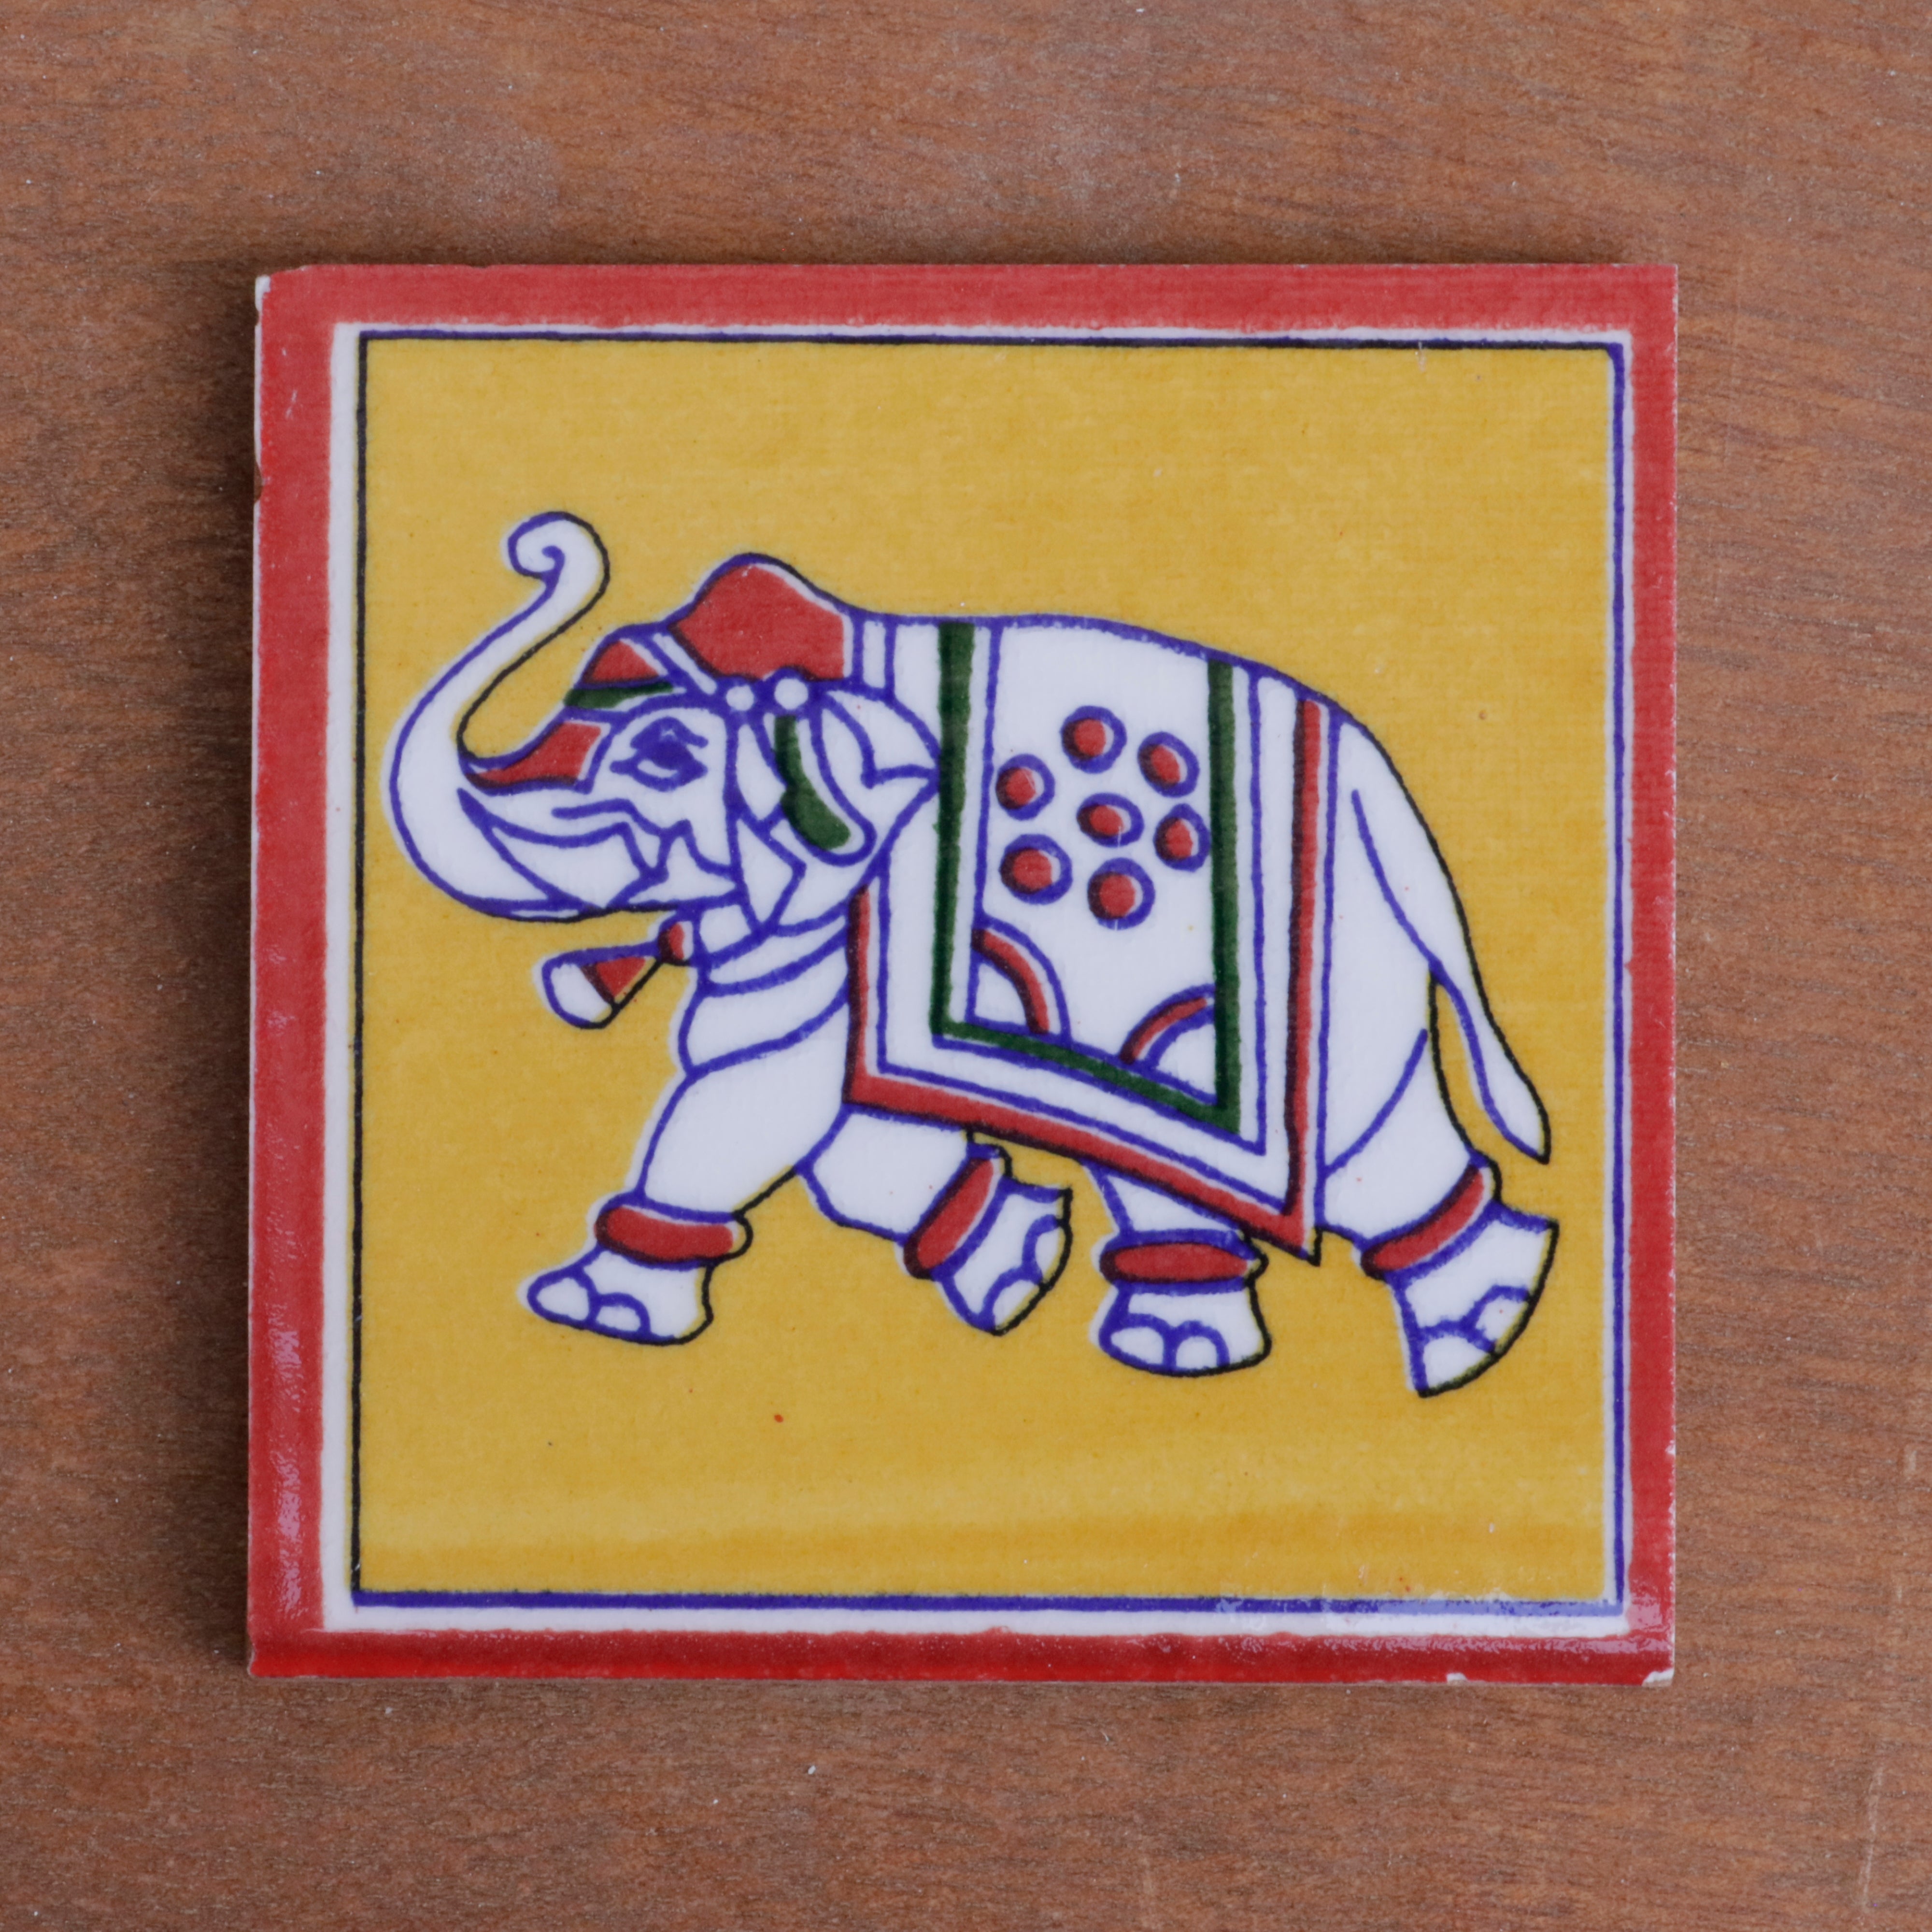 Classic Flora Elephant Designed Ceramic Square Tile set of 2 Ceramic Tile